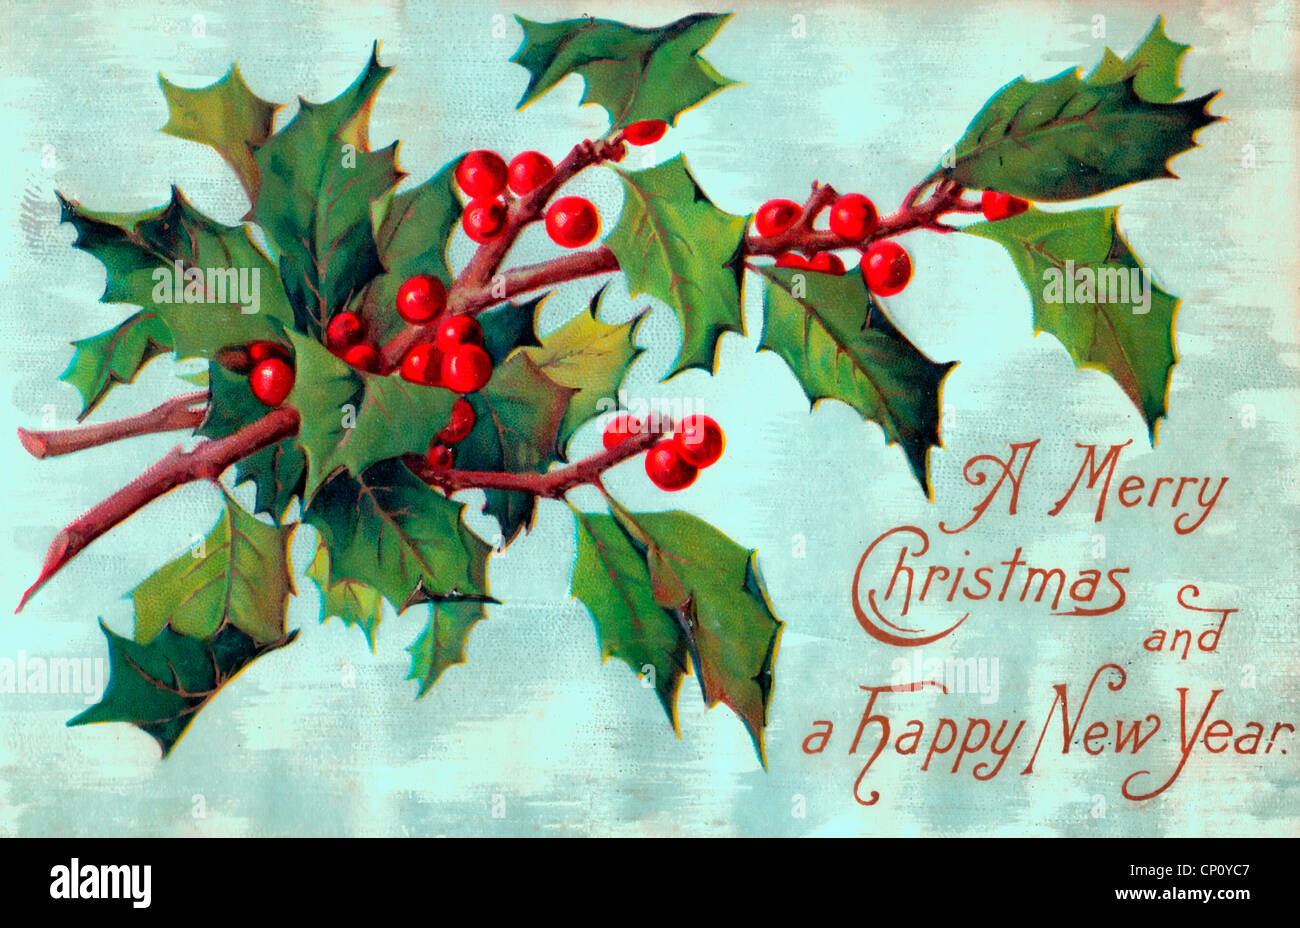 Ein frohes Weihnachtsfest und ein glückliches neues Jahr - Vintage-Karte Stockfoto